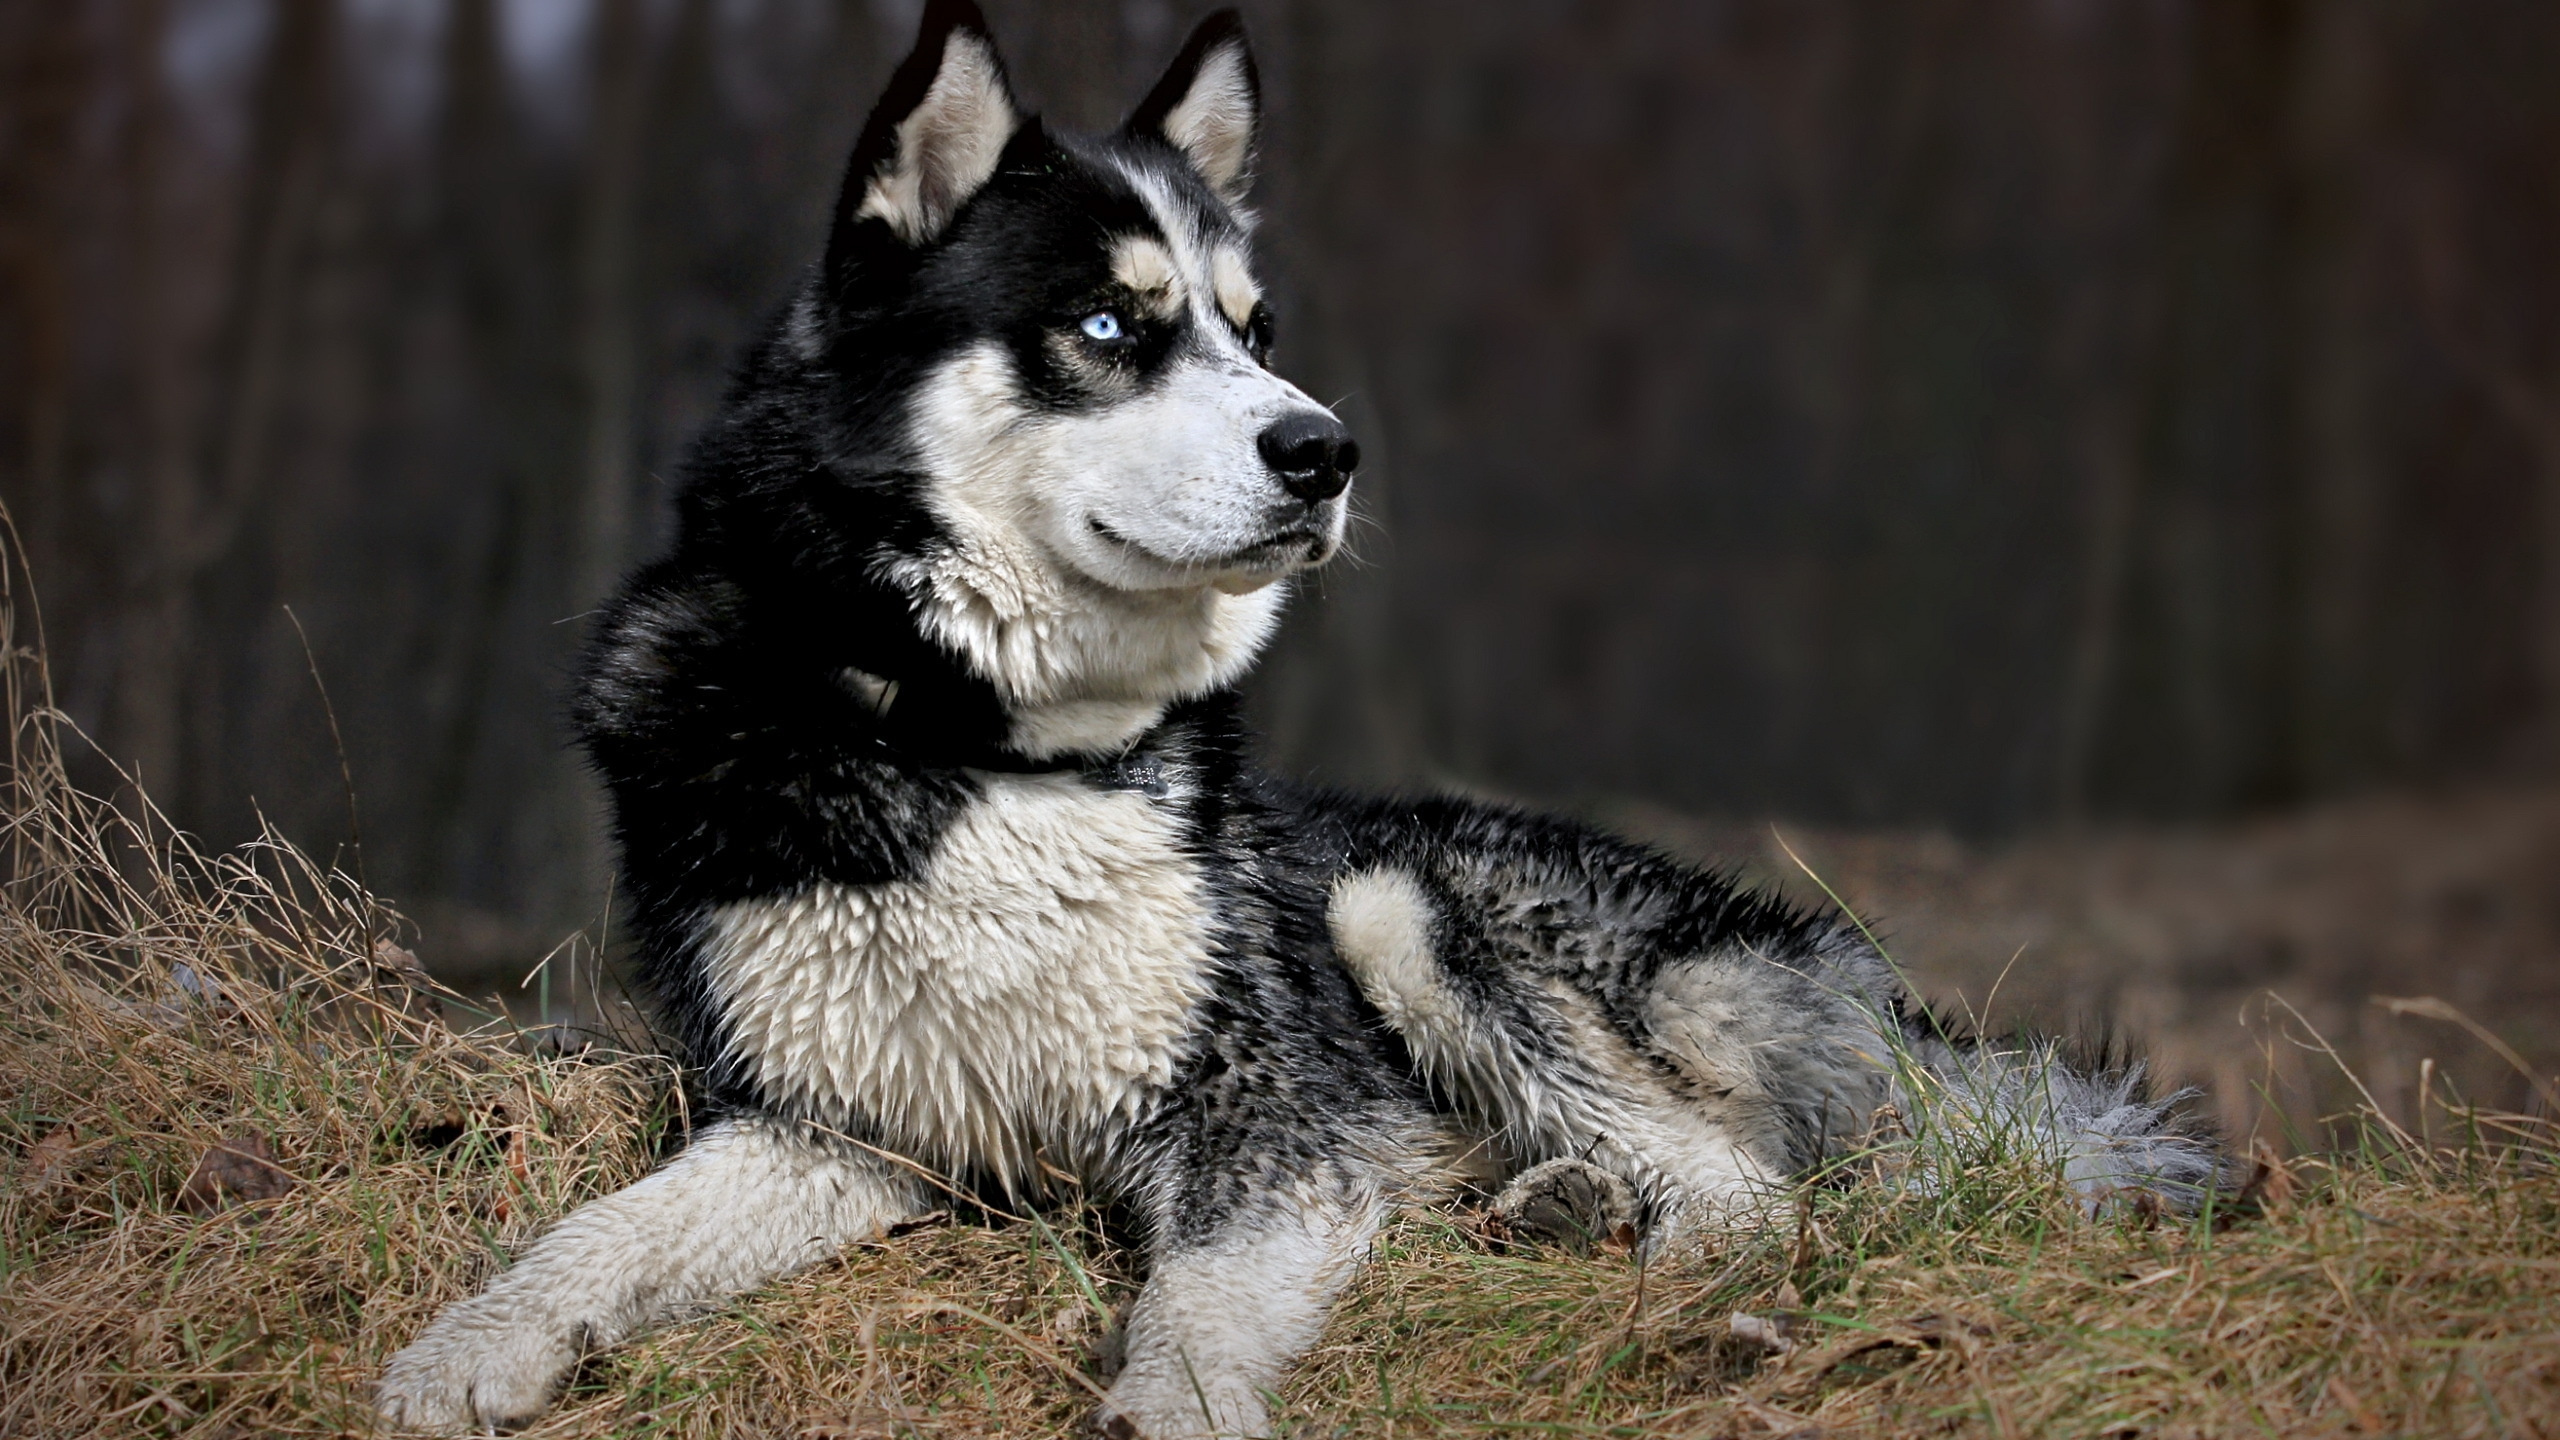 小狗, 阿拉斯加雪橇犬, 品种的狗, 萨哈林赫斯基, Tamaskan狗 壁纸 2560x1440 允许